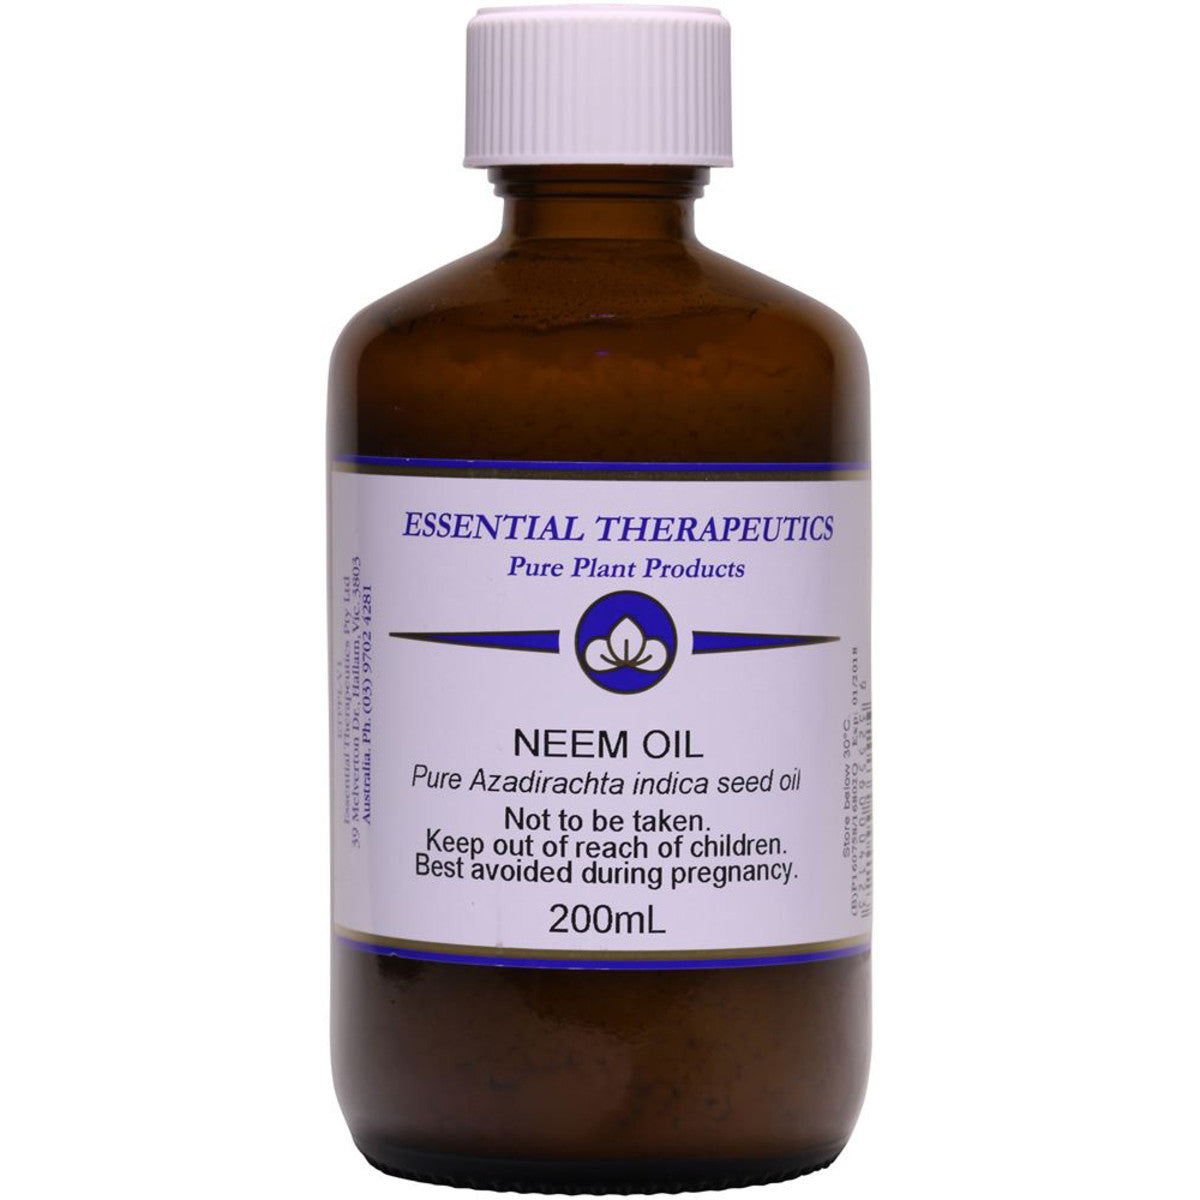 Essential Therapeutic - Neem Oil 200ml